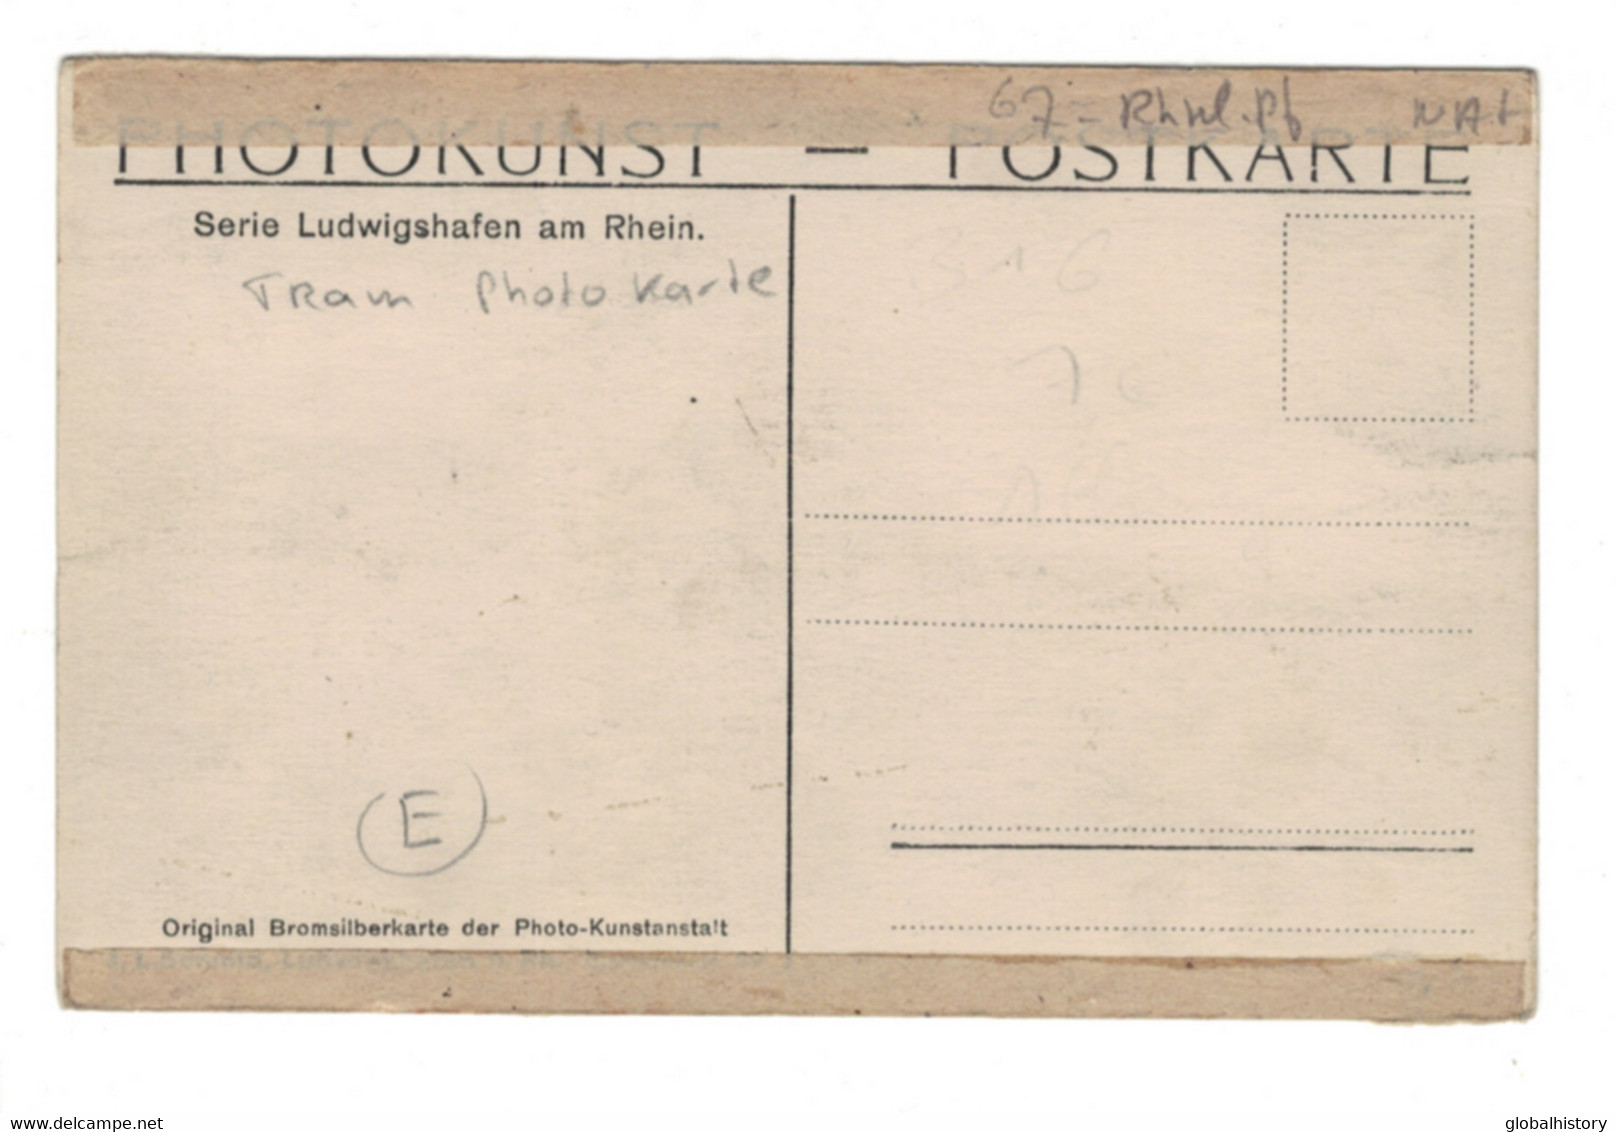 DG1916 - LUDWIGSHAFEN, STADHAUS "NORD" - BAHNHOF - STRAßENSZENE Mit TRAM - PHOTO KARTE - Ludwigshafen